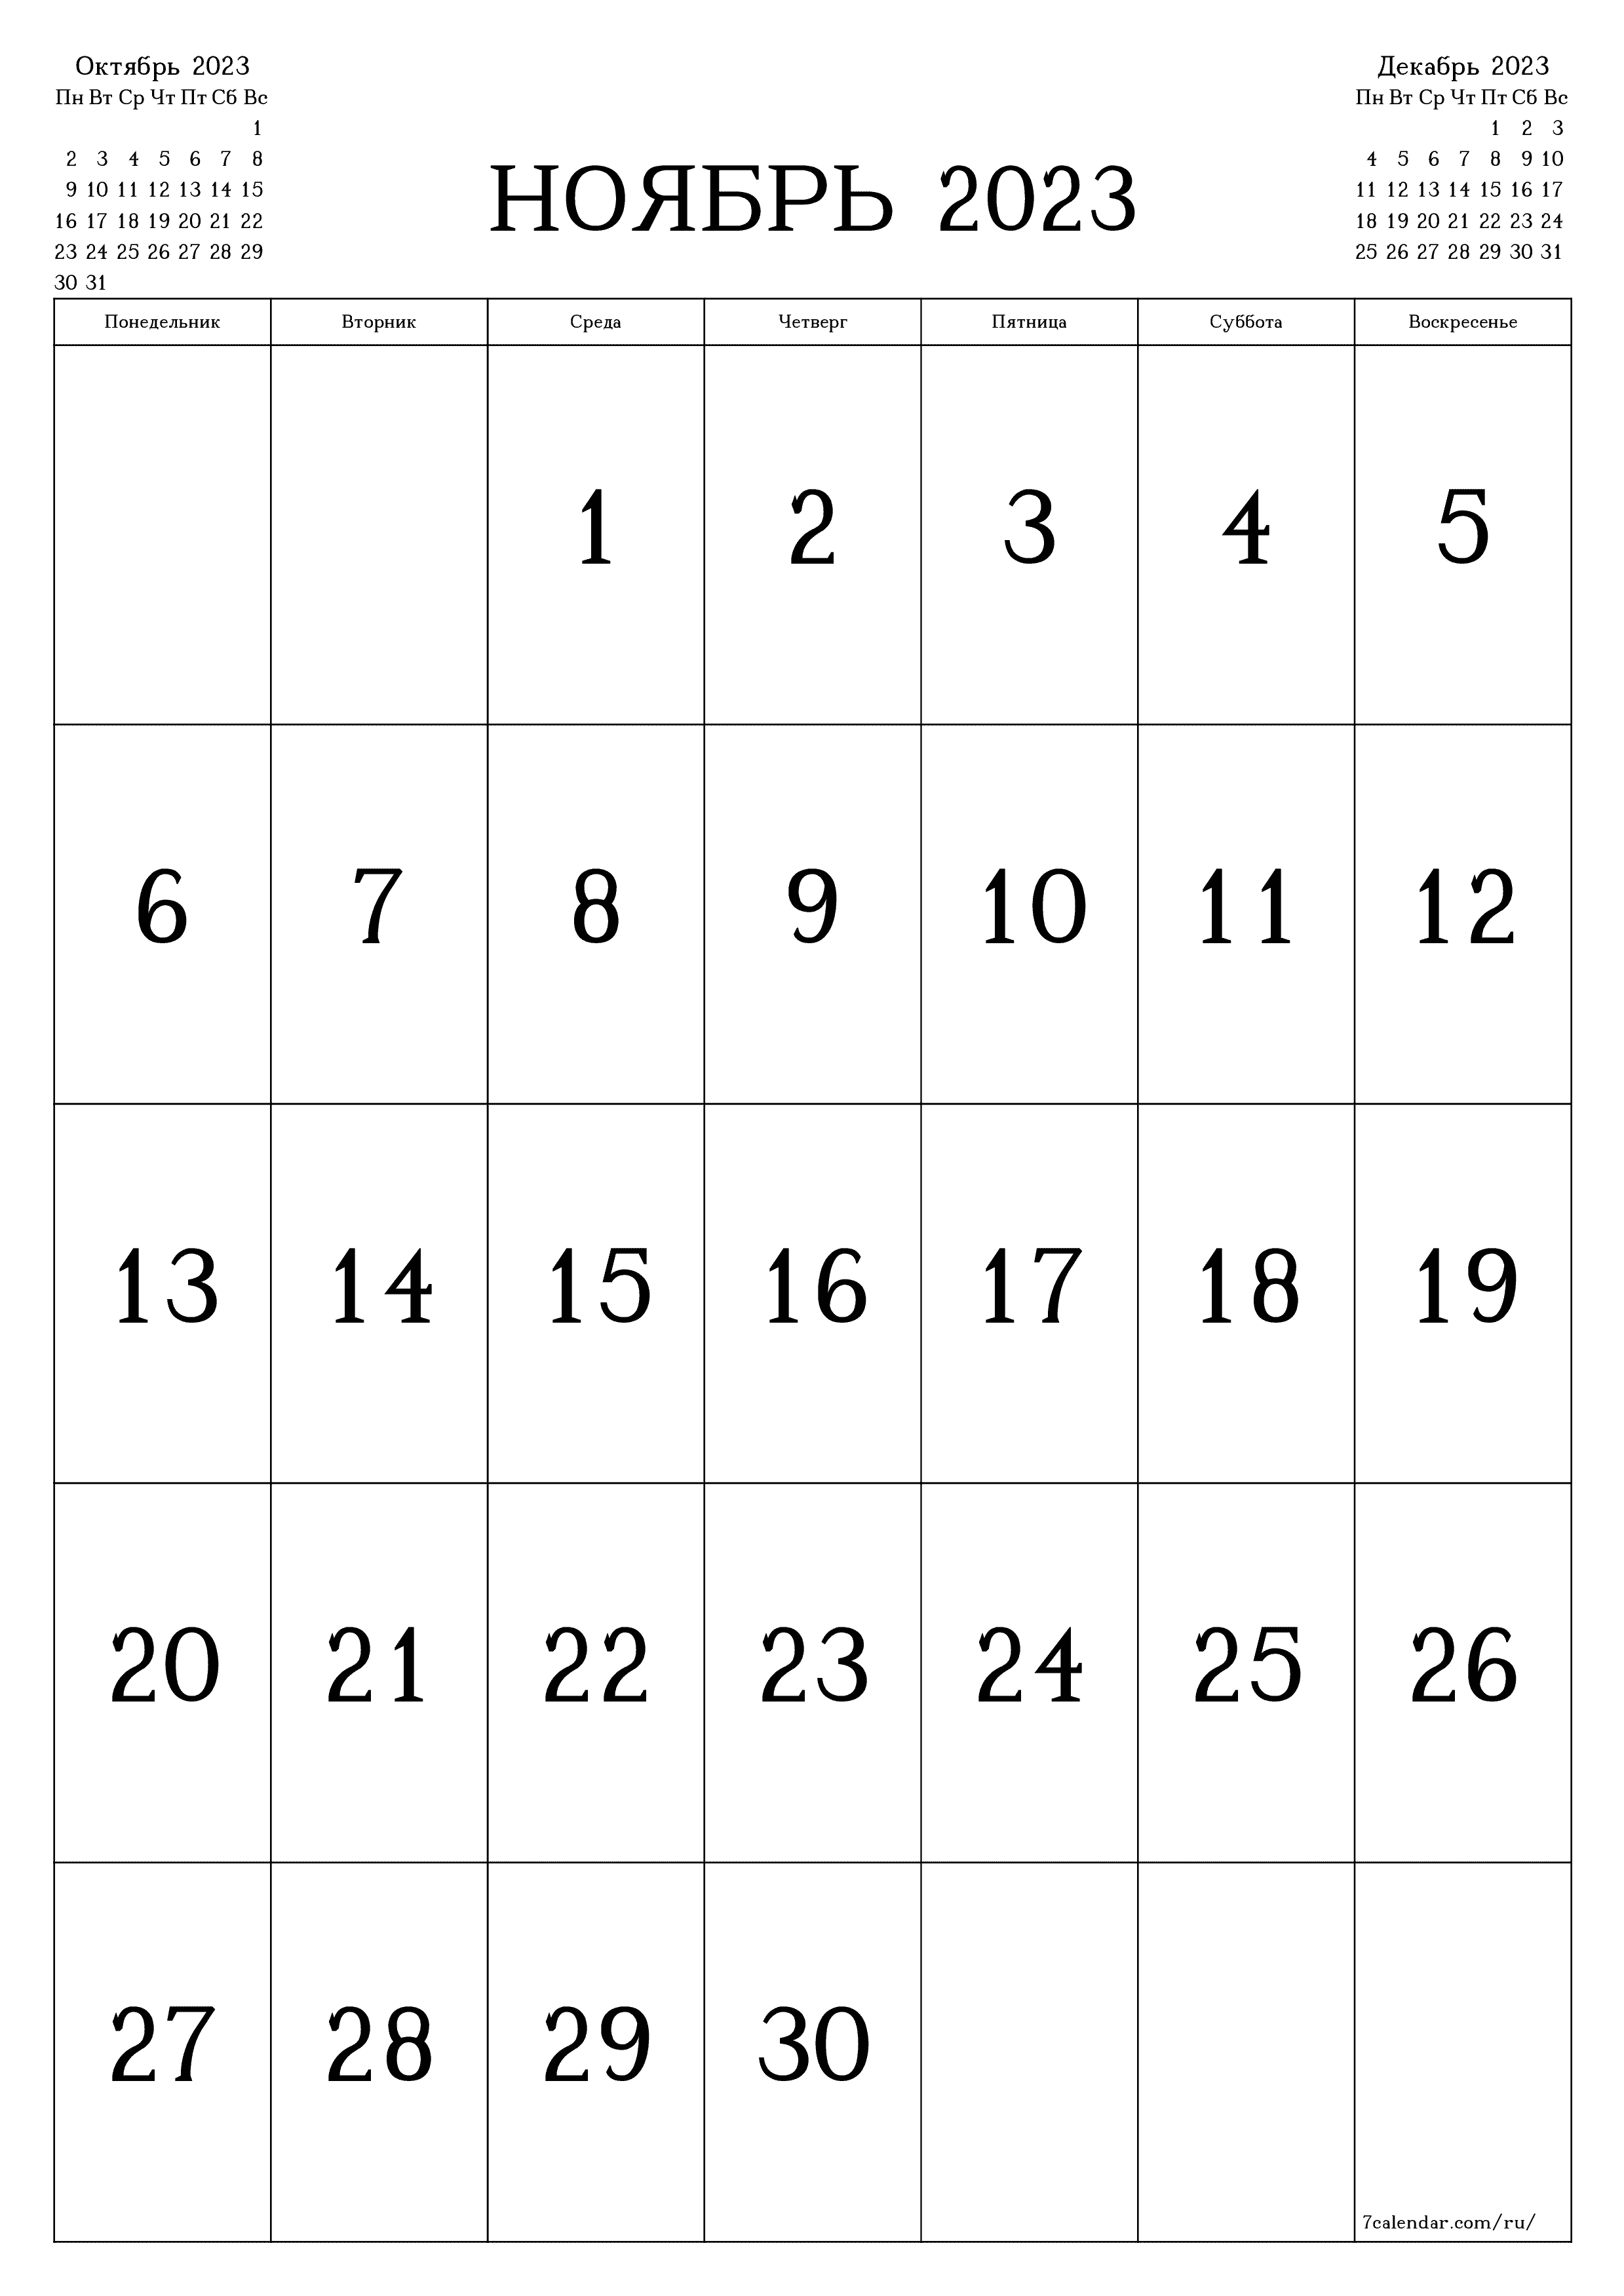 Календари и планеры для печати Ноябрь 2023 A4, A3 в PDF и PNG - 7calendar